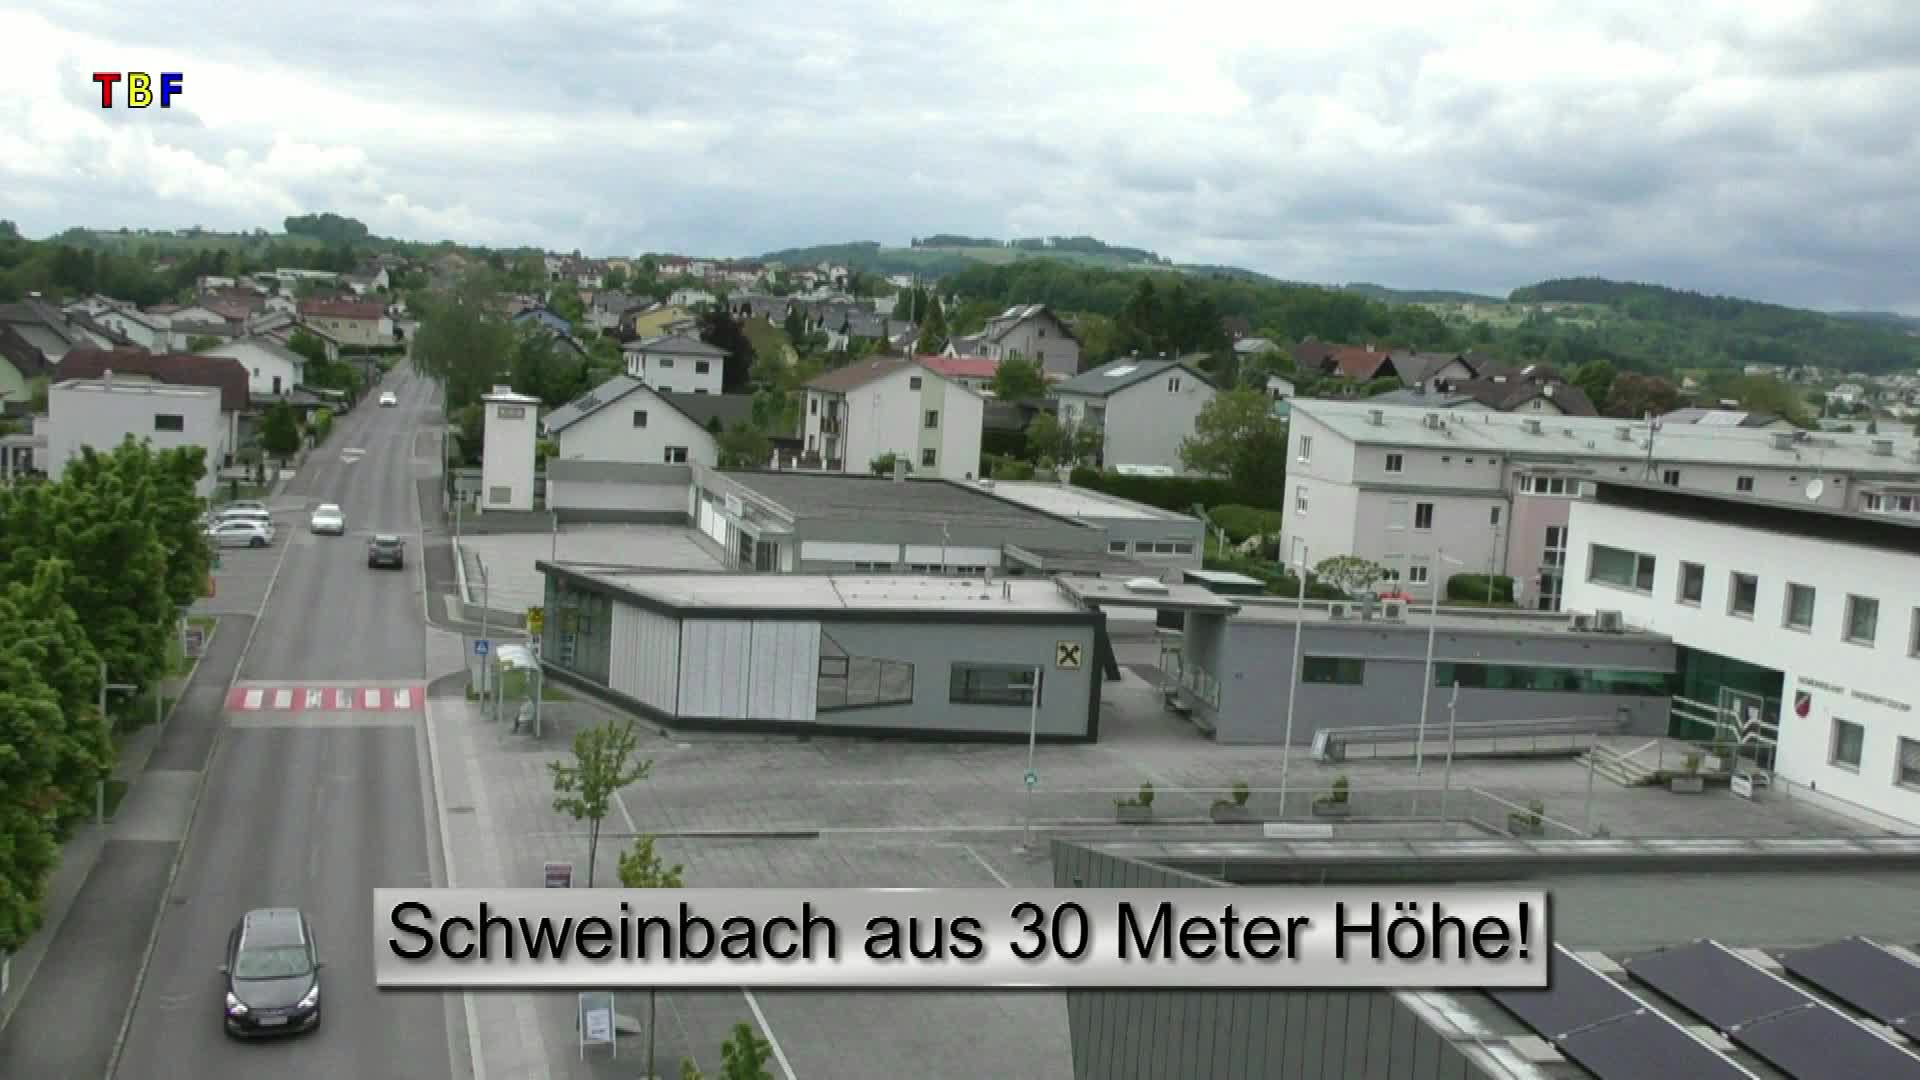 Schweinbach aus 30 Meter Höhe!